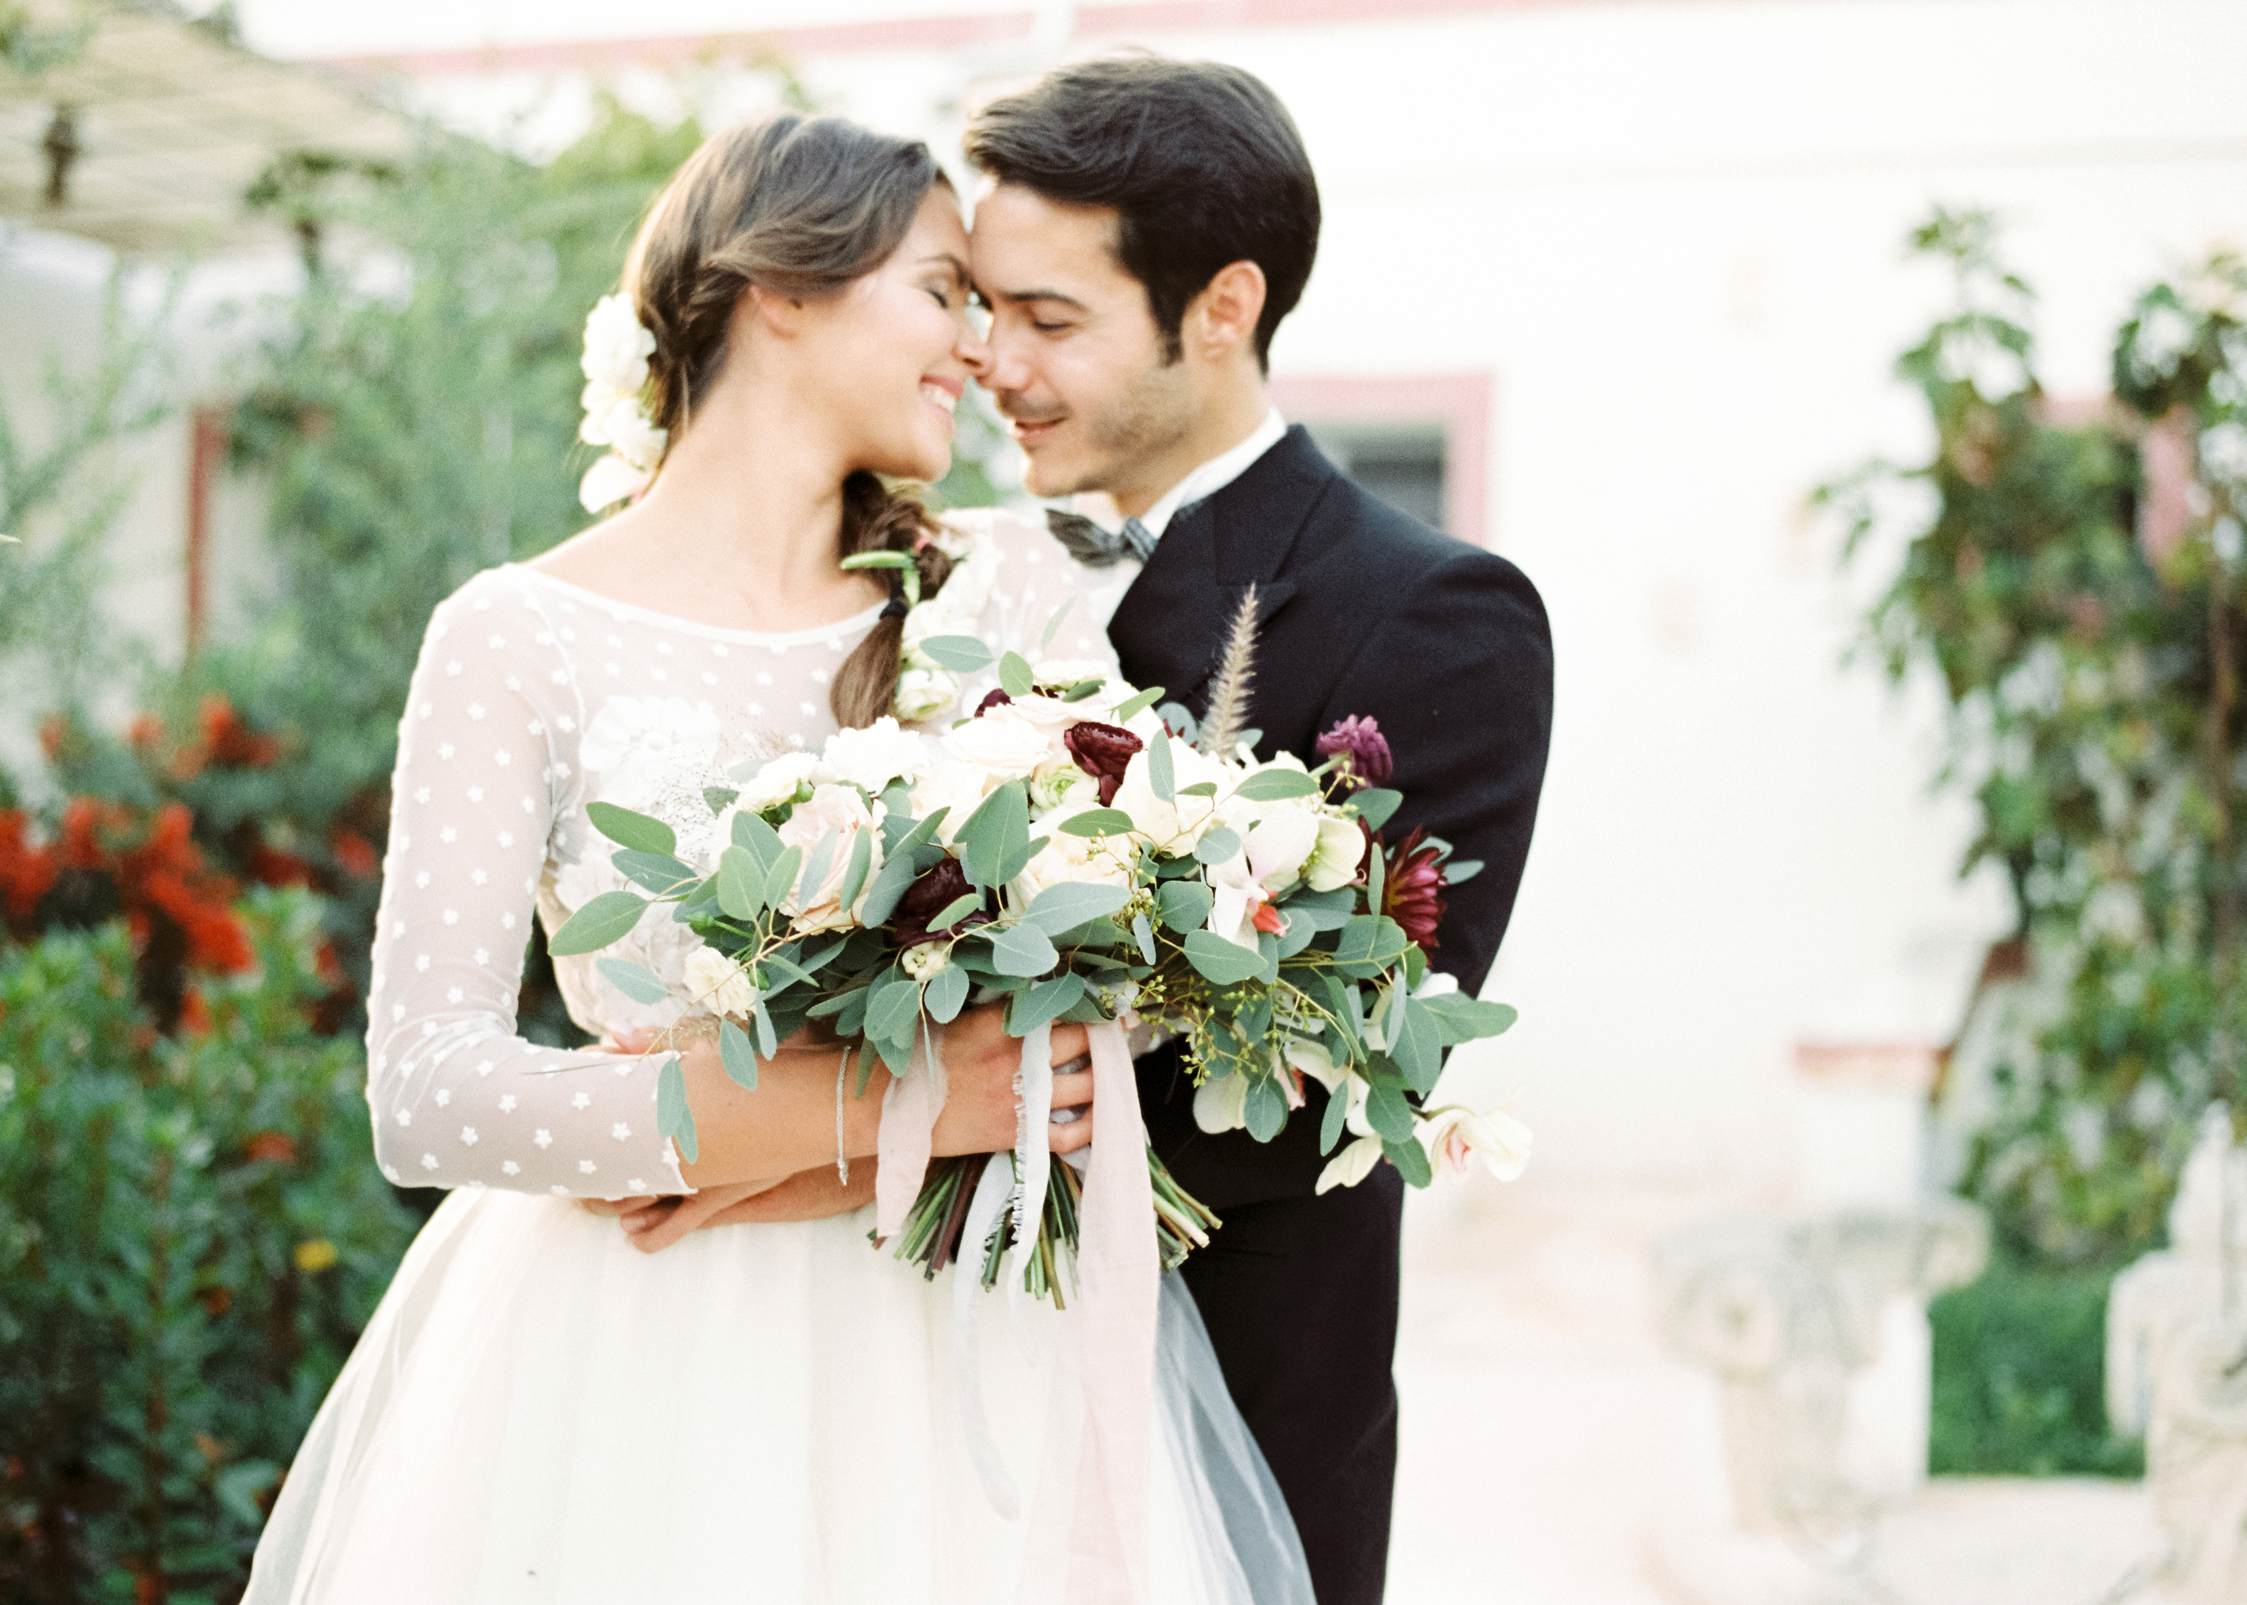 Wedding photographer Masseria Montenapoleone Italy - Romantic couple shoot